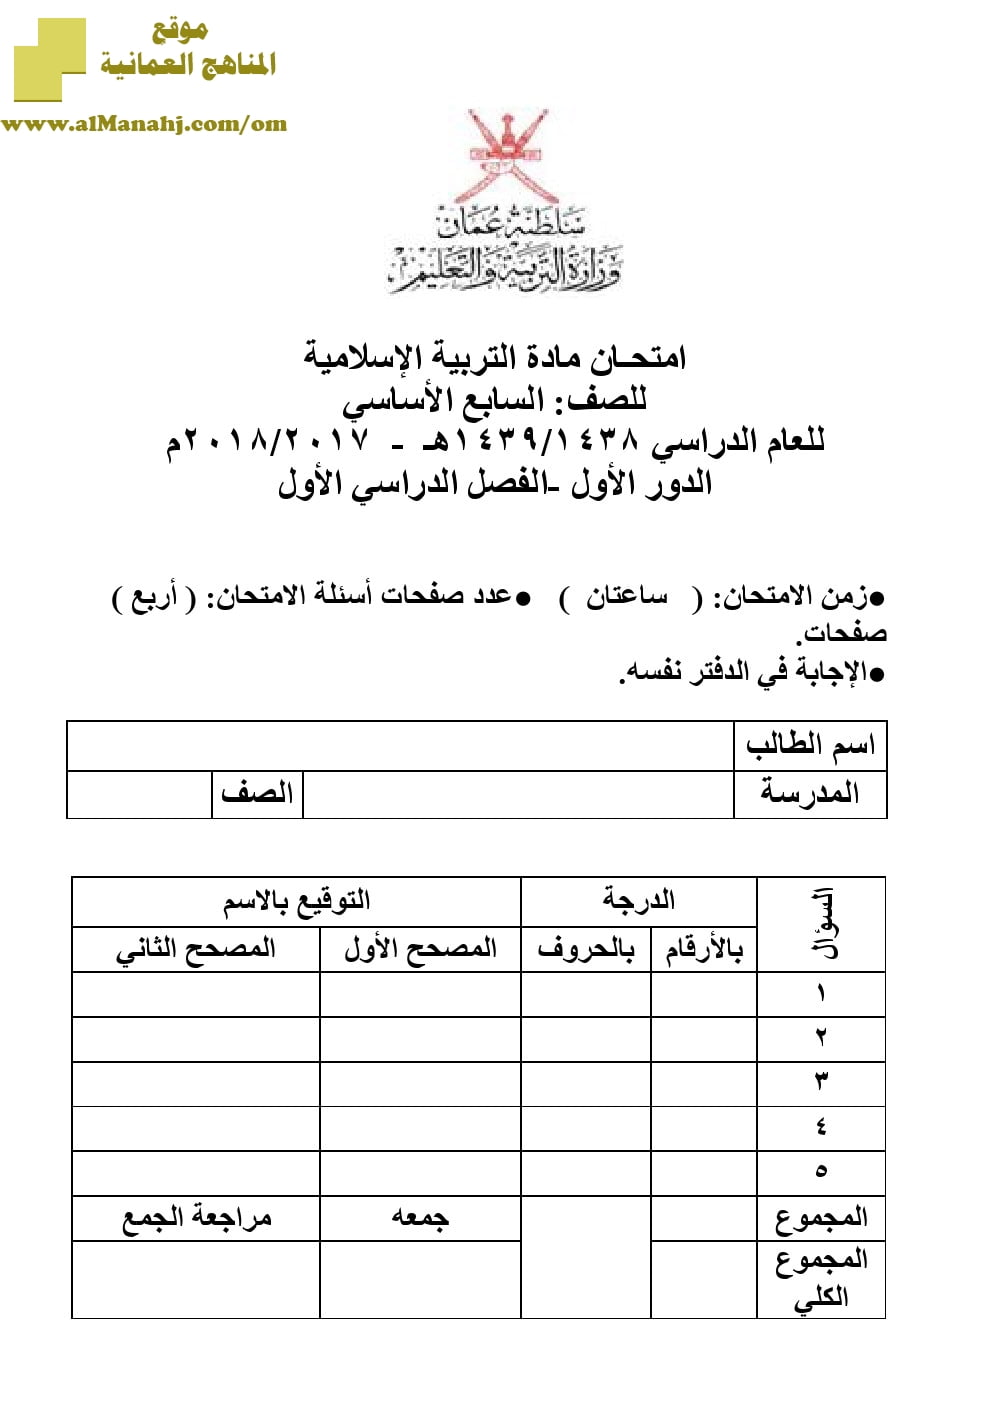 أسئلة وإجابة الامتحان الرسمي للفصل الدراسي الأول الدور الأول والثاني (تربية اسلامية) السابع